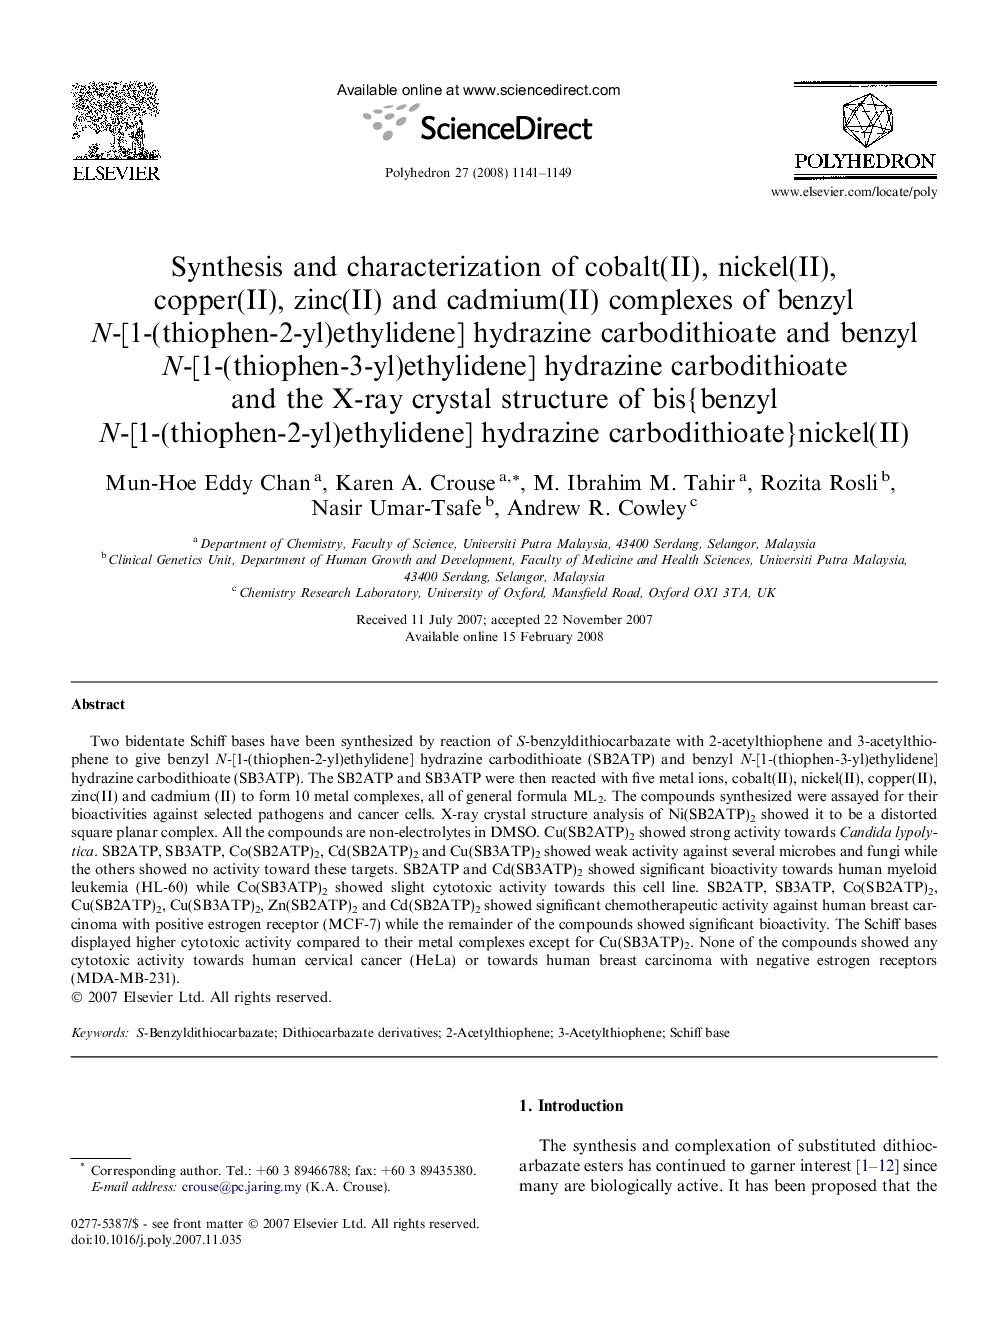 Synthesis and characterization of cobalt(II), nickel(II), copper(II), zinc(II) and cadmium(II) complexes of benzyl N-[1-(thiophen-2-yl)ethylidene] hydrazine carbodithioate and benzyl N-[1-(thiophen-3-yl)ethylidene] hydrazine carbodithioate and the X-ray c